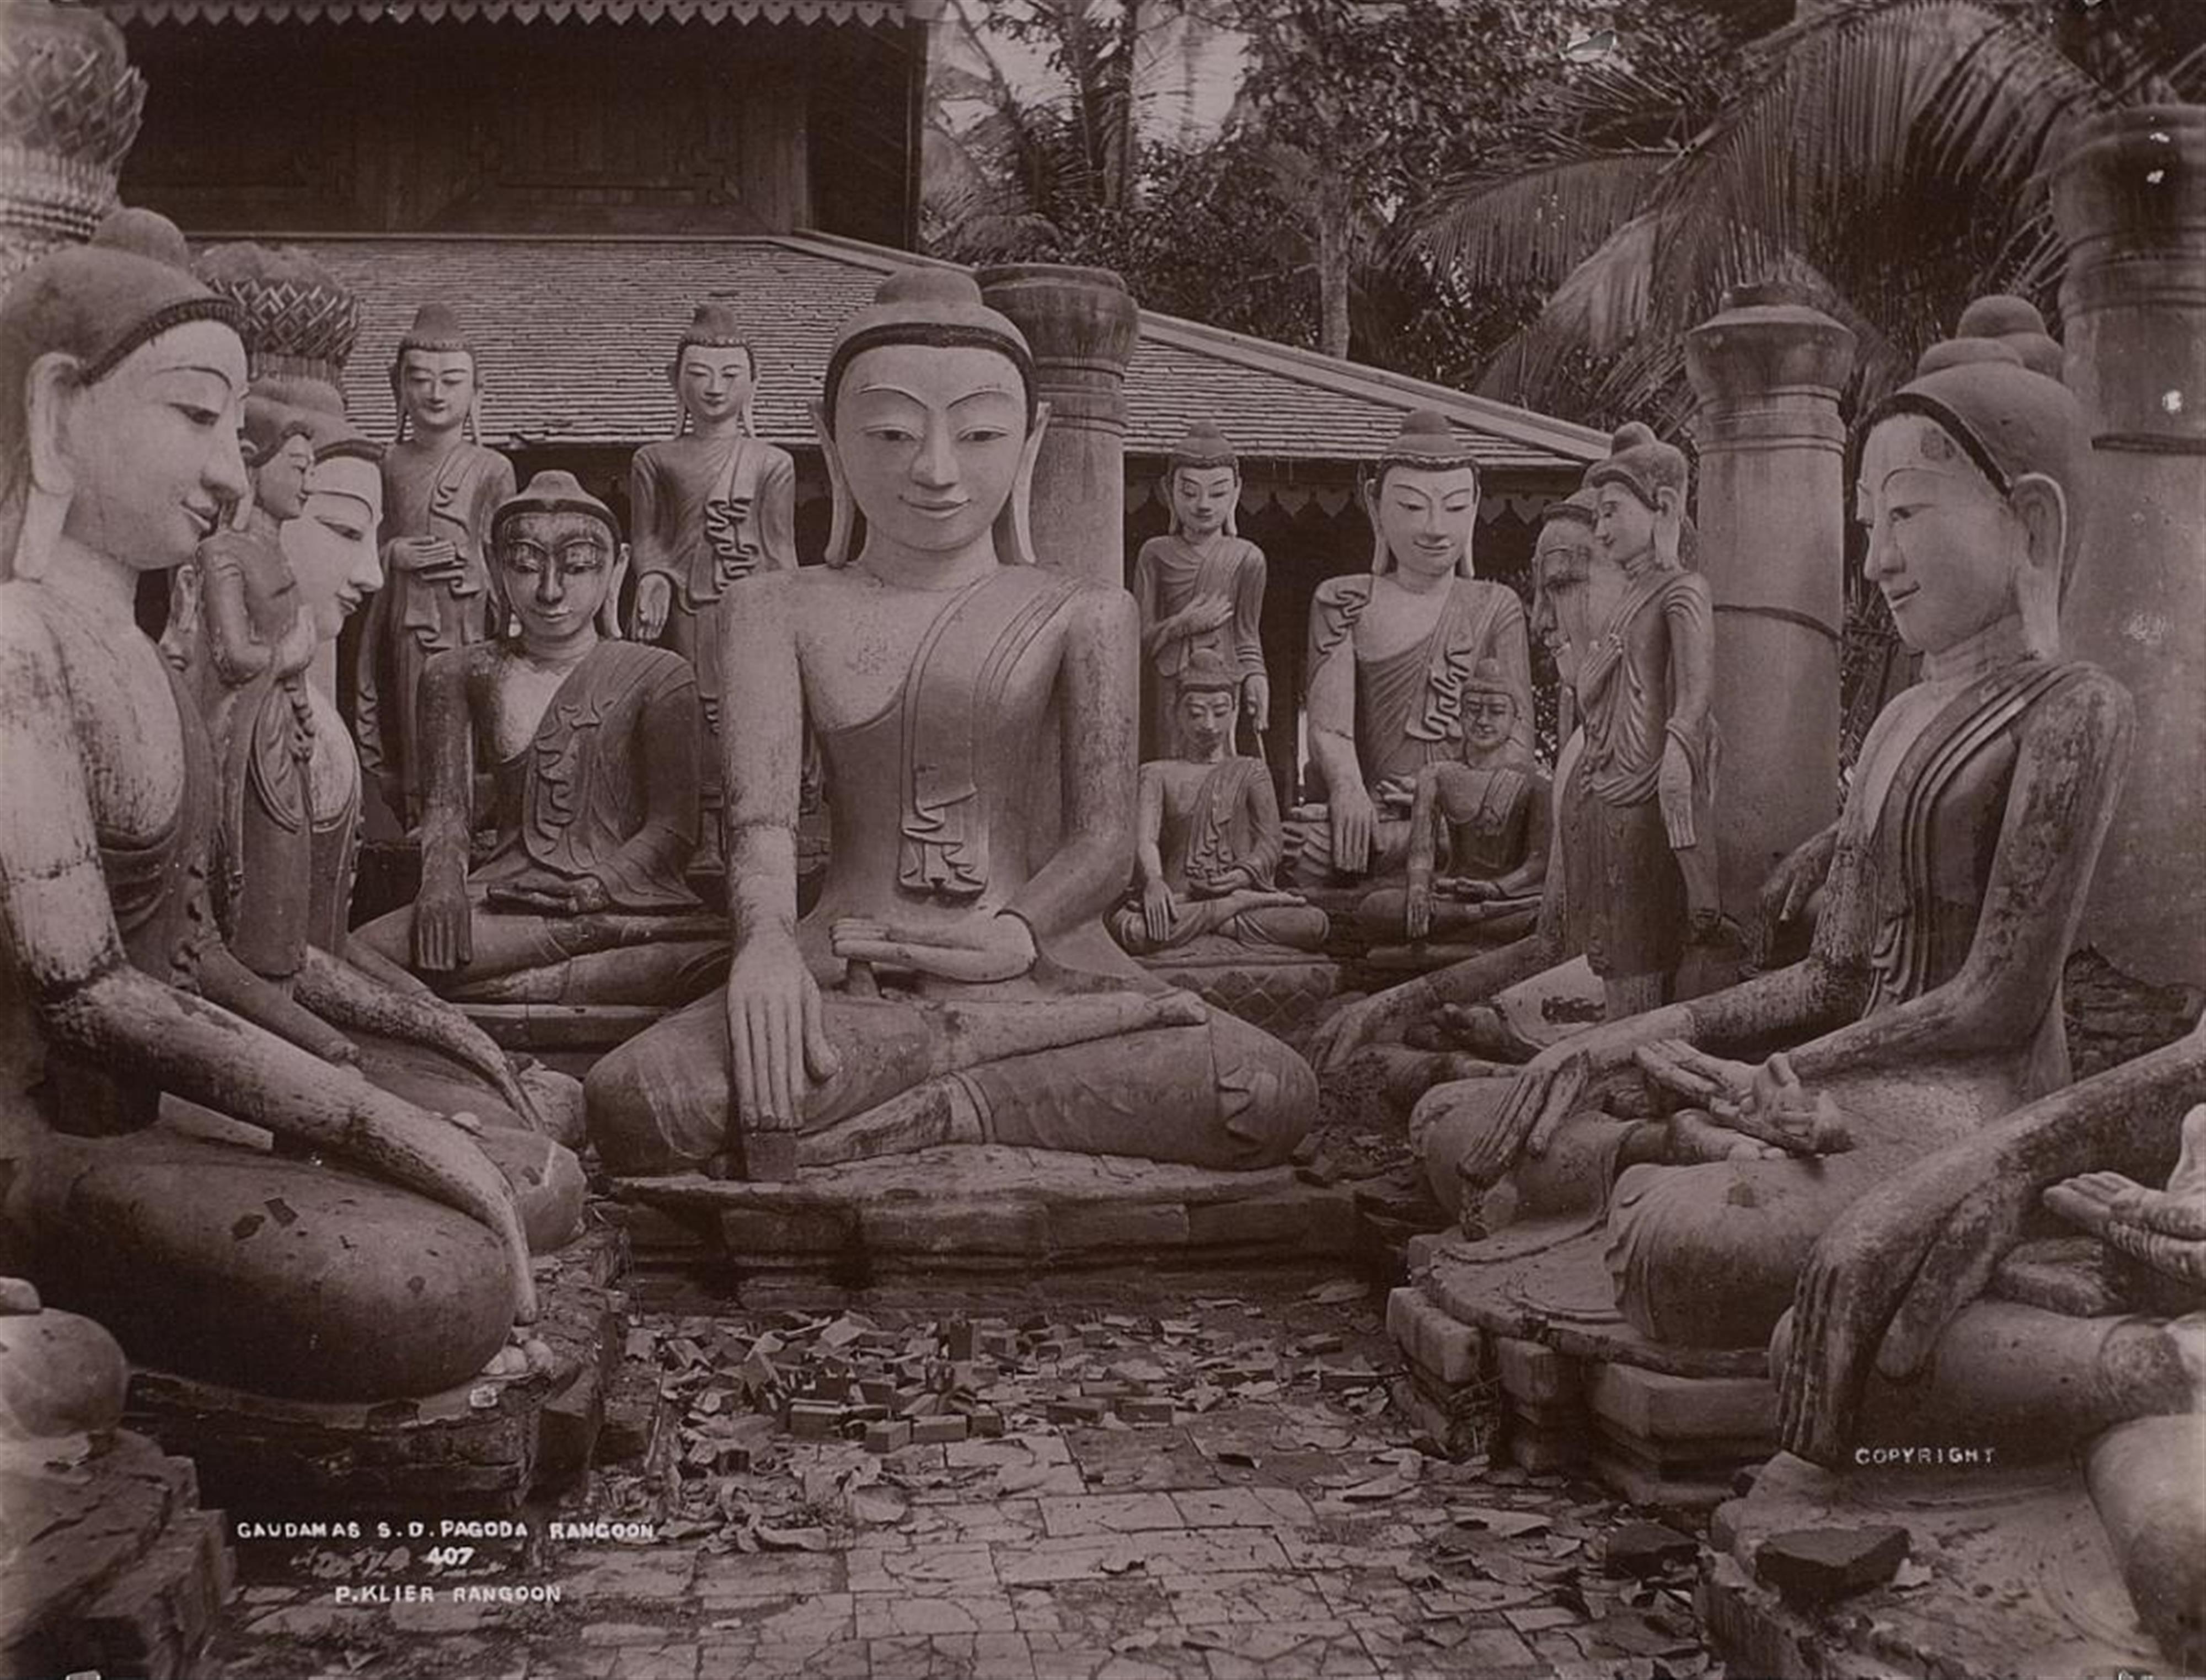 Adolphe Philip Klier - Ohne Titel (Ansichten von Burma) - image-6